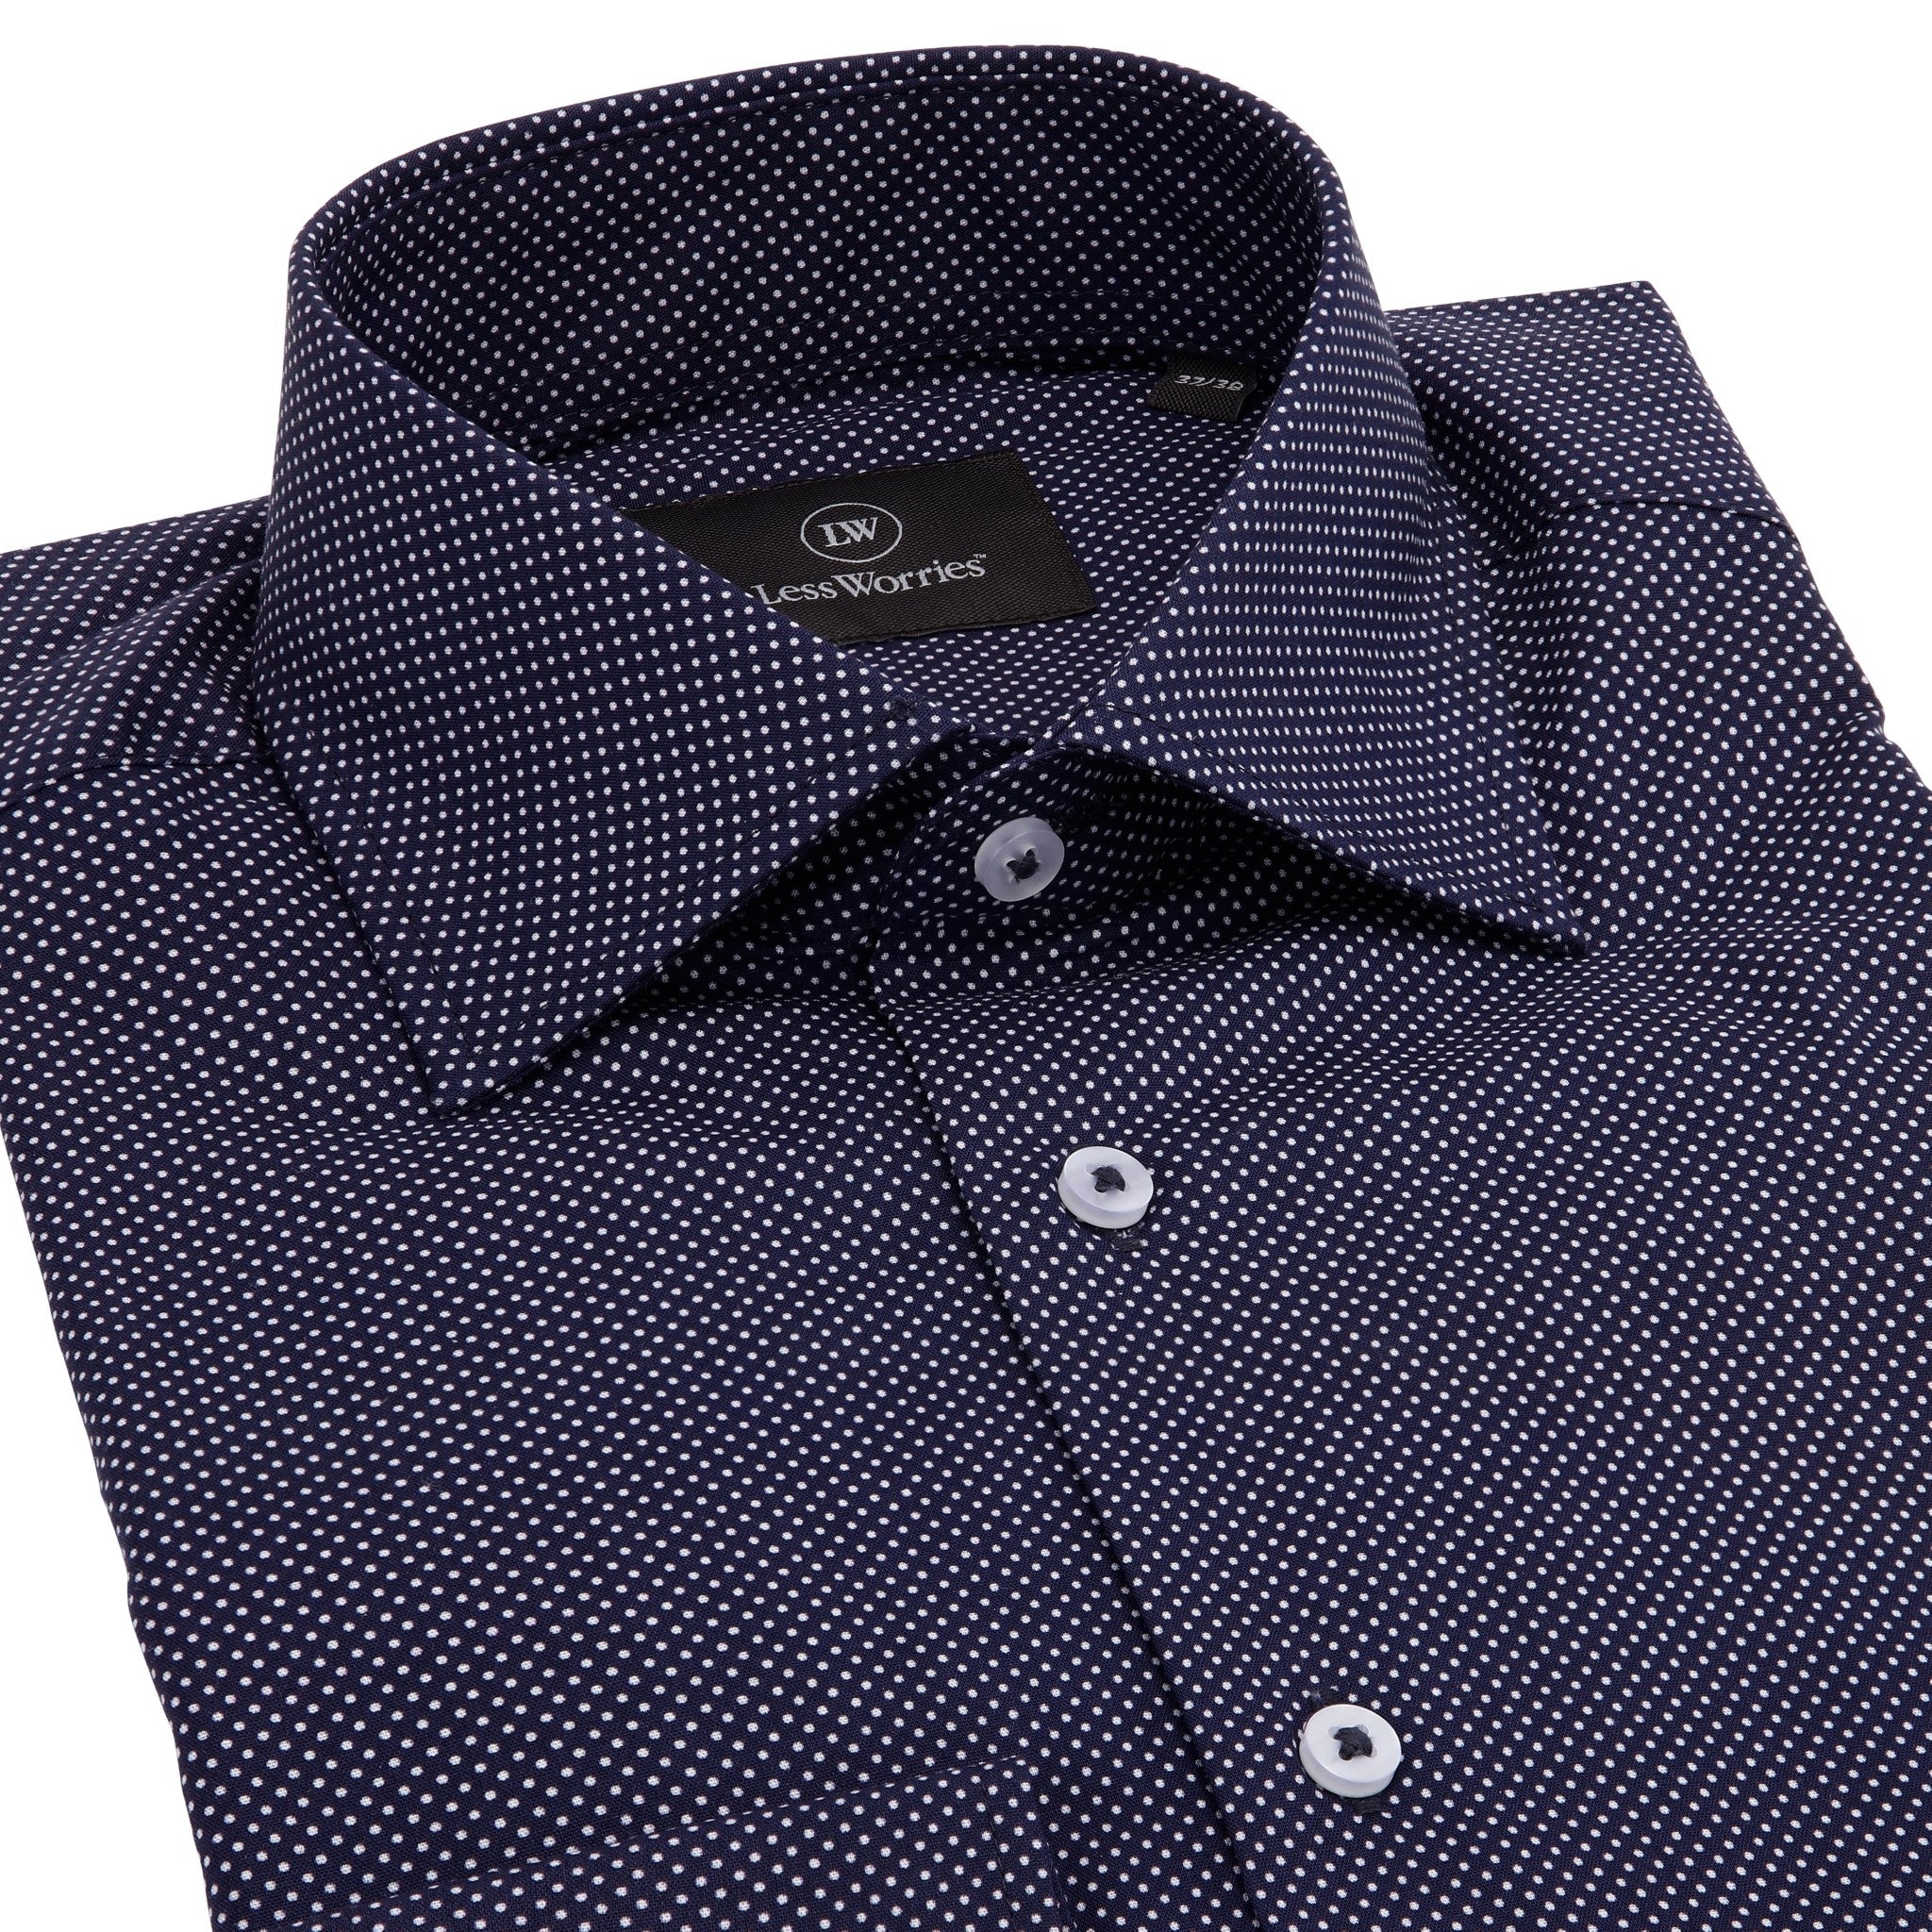 Marinblå Twill-skjorta med prickar